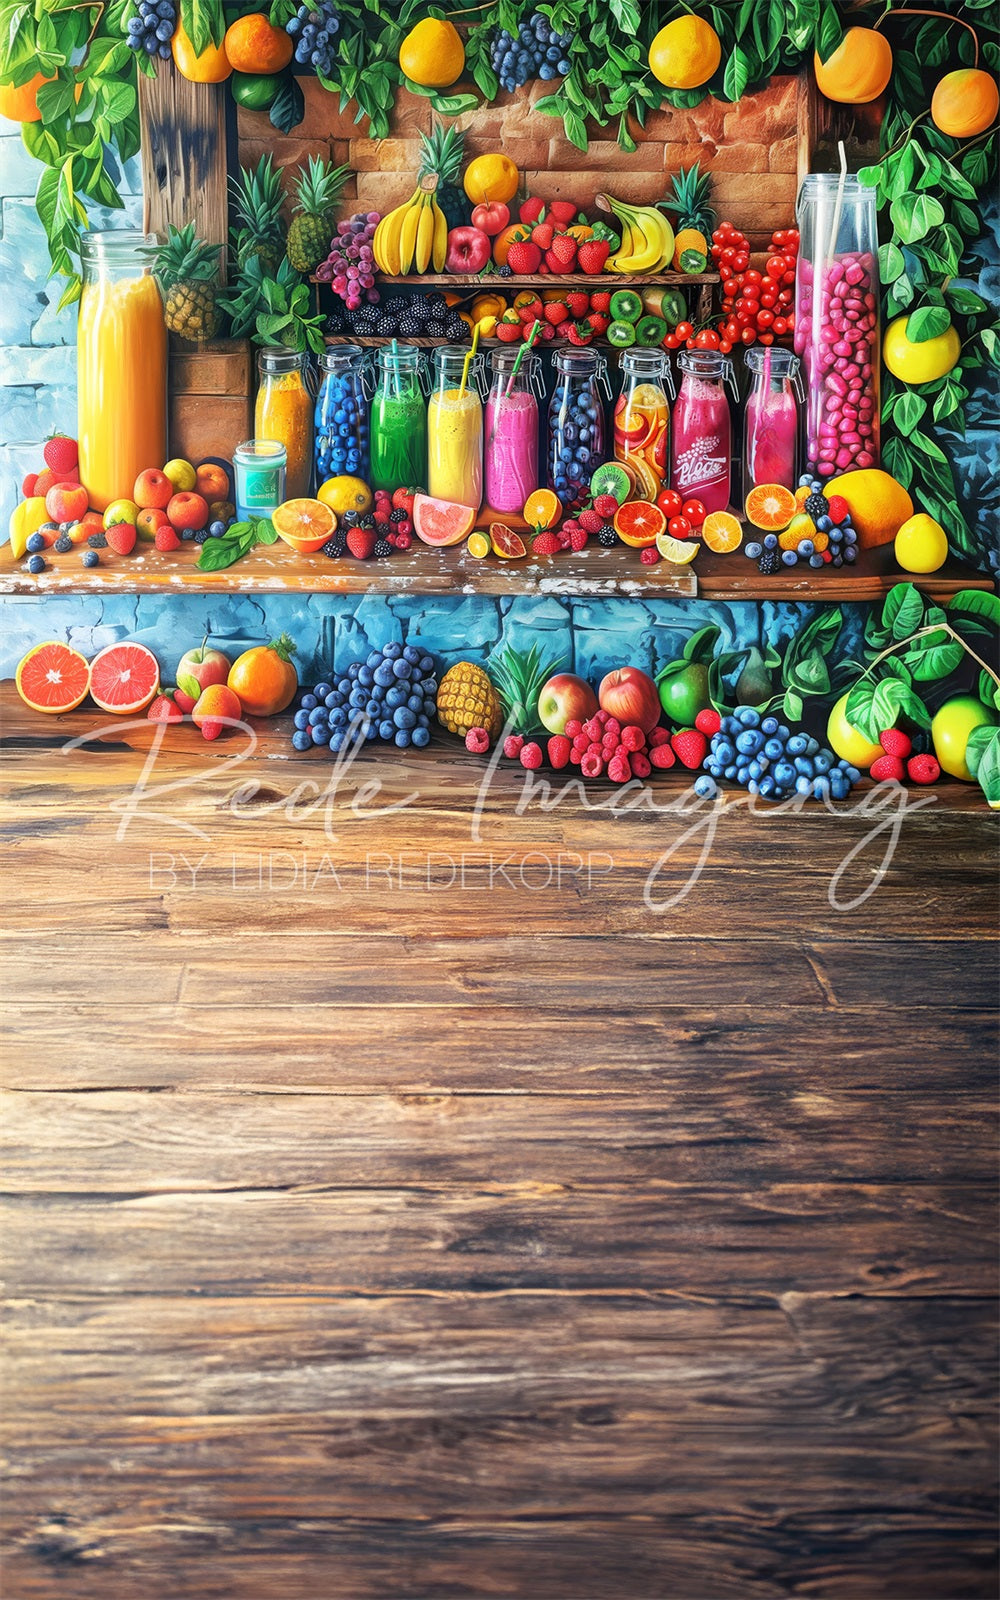 Zomer Kleurrijke Fruitwinkel Achtergrond Ontworpen door Lidia Redekopp